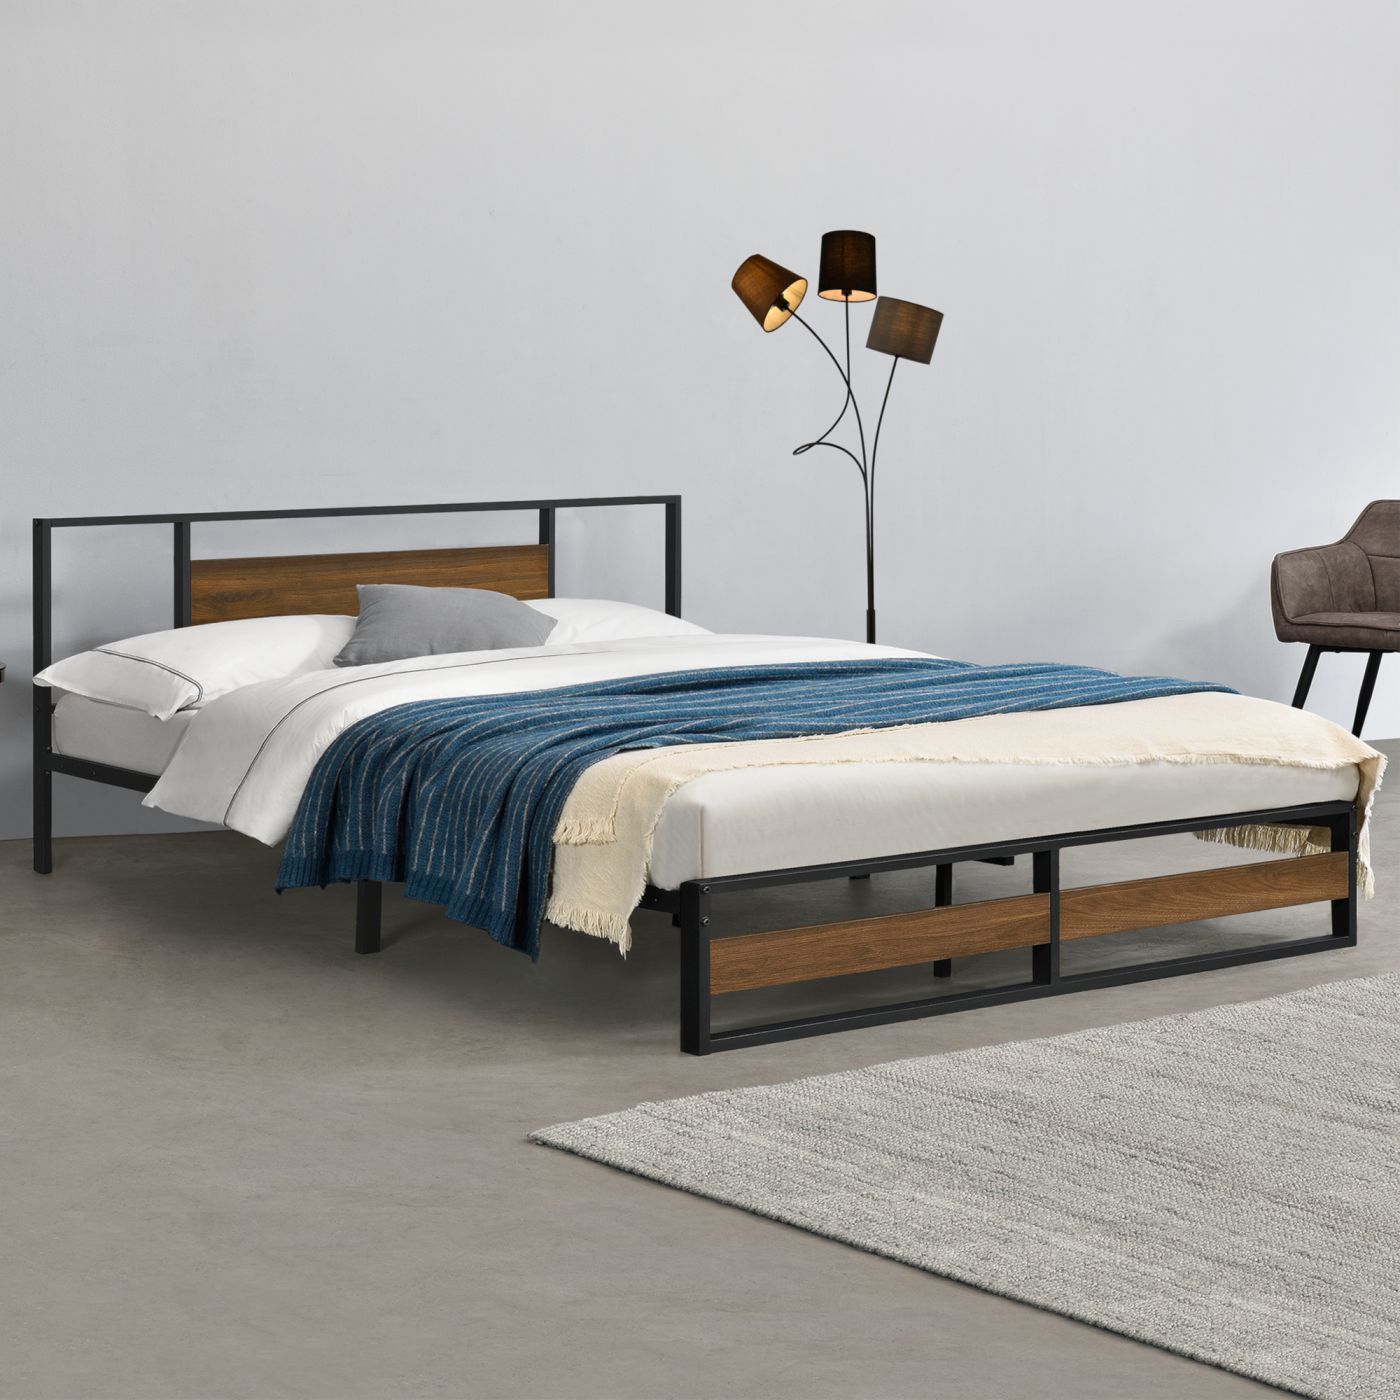 Metalen bed bedframe 180x200 cm zwart en walnoot | premiumXL